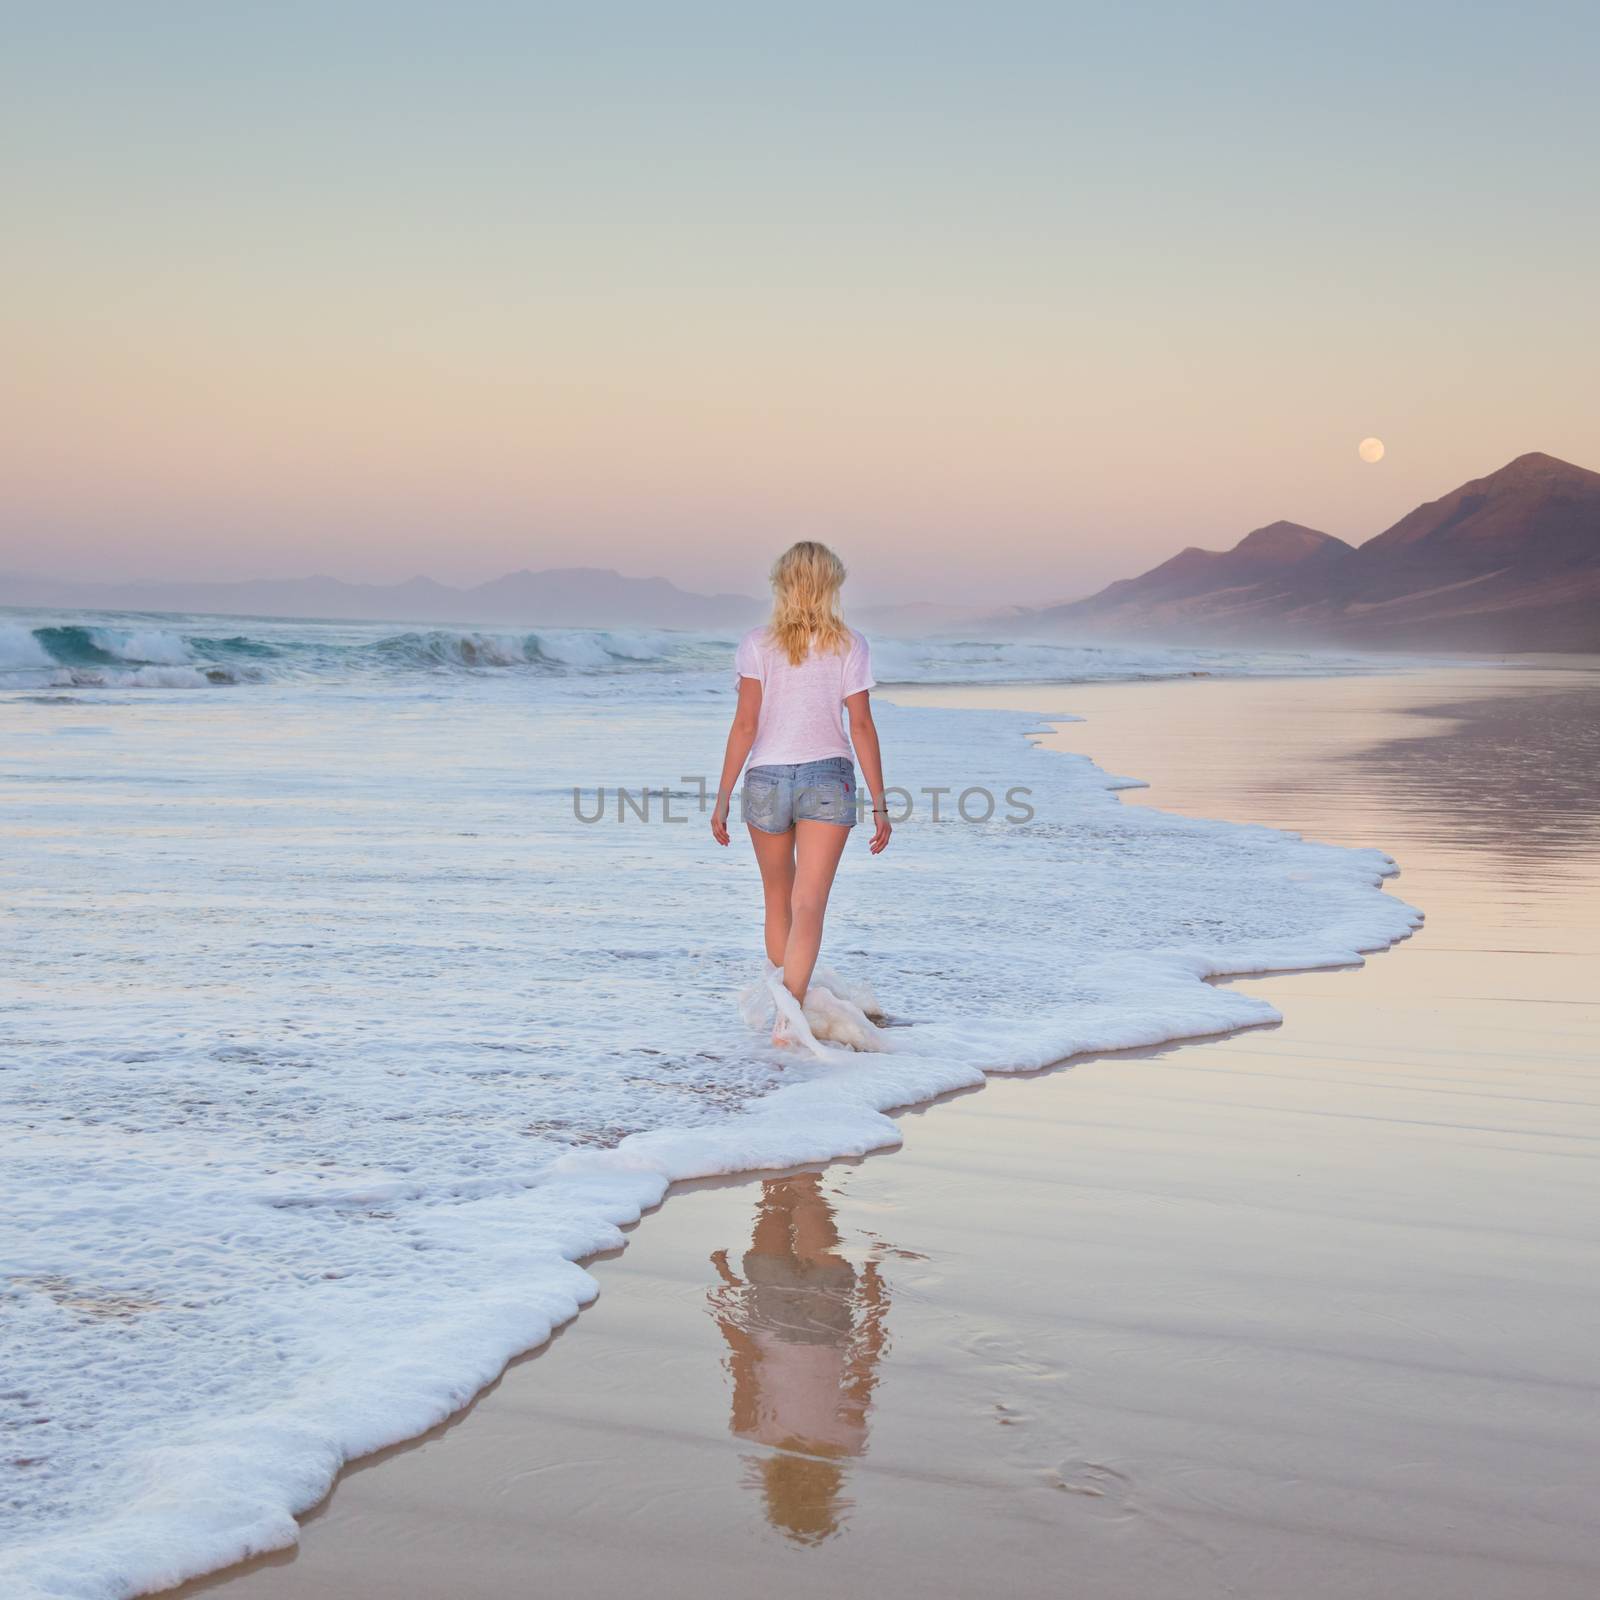 Lady walking on sandy beach in sunset. by kasto